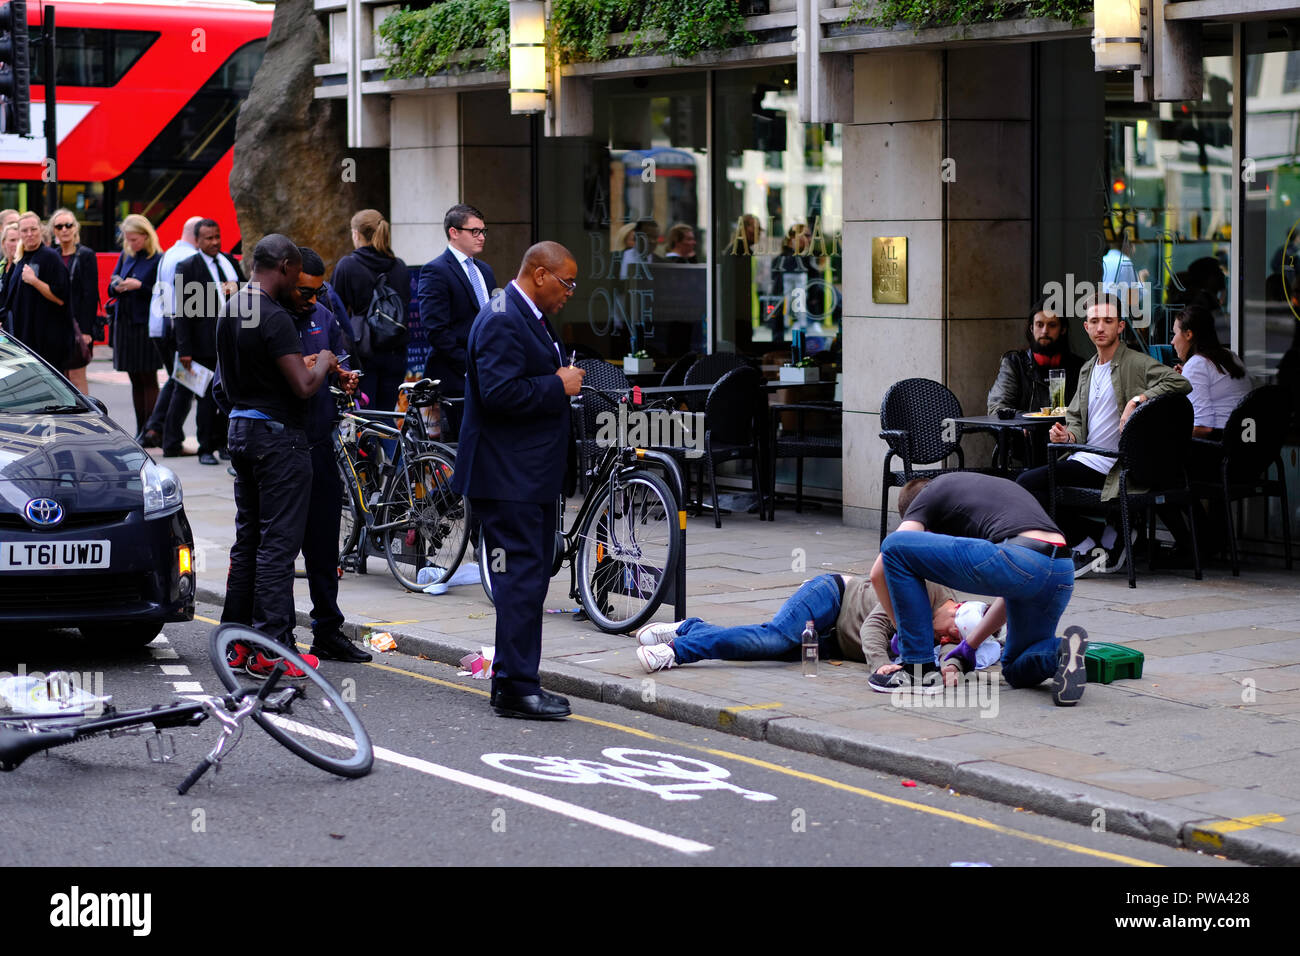 Cycliste d'être frappé par une voiture et blessé, Chiswell Street, London, United Kingdom Banque D'Images